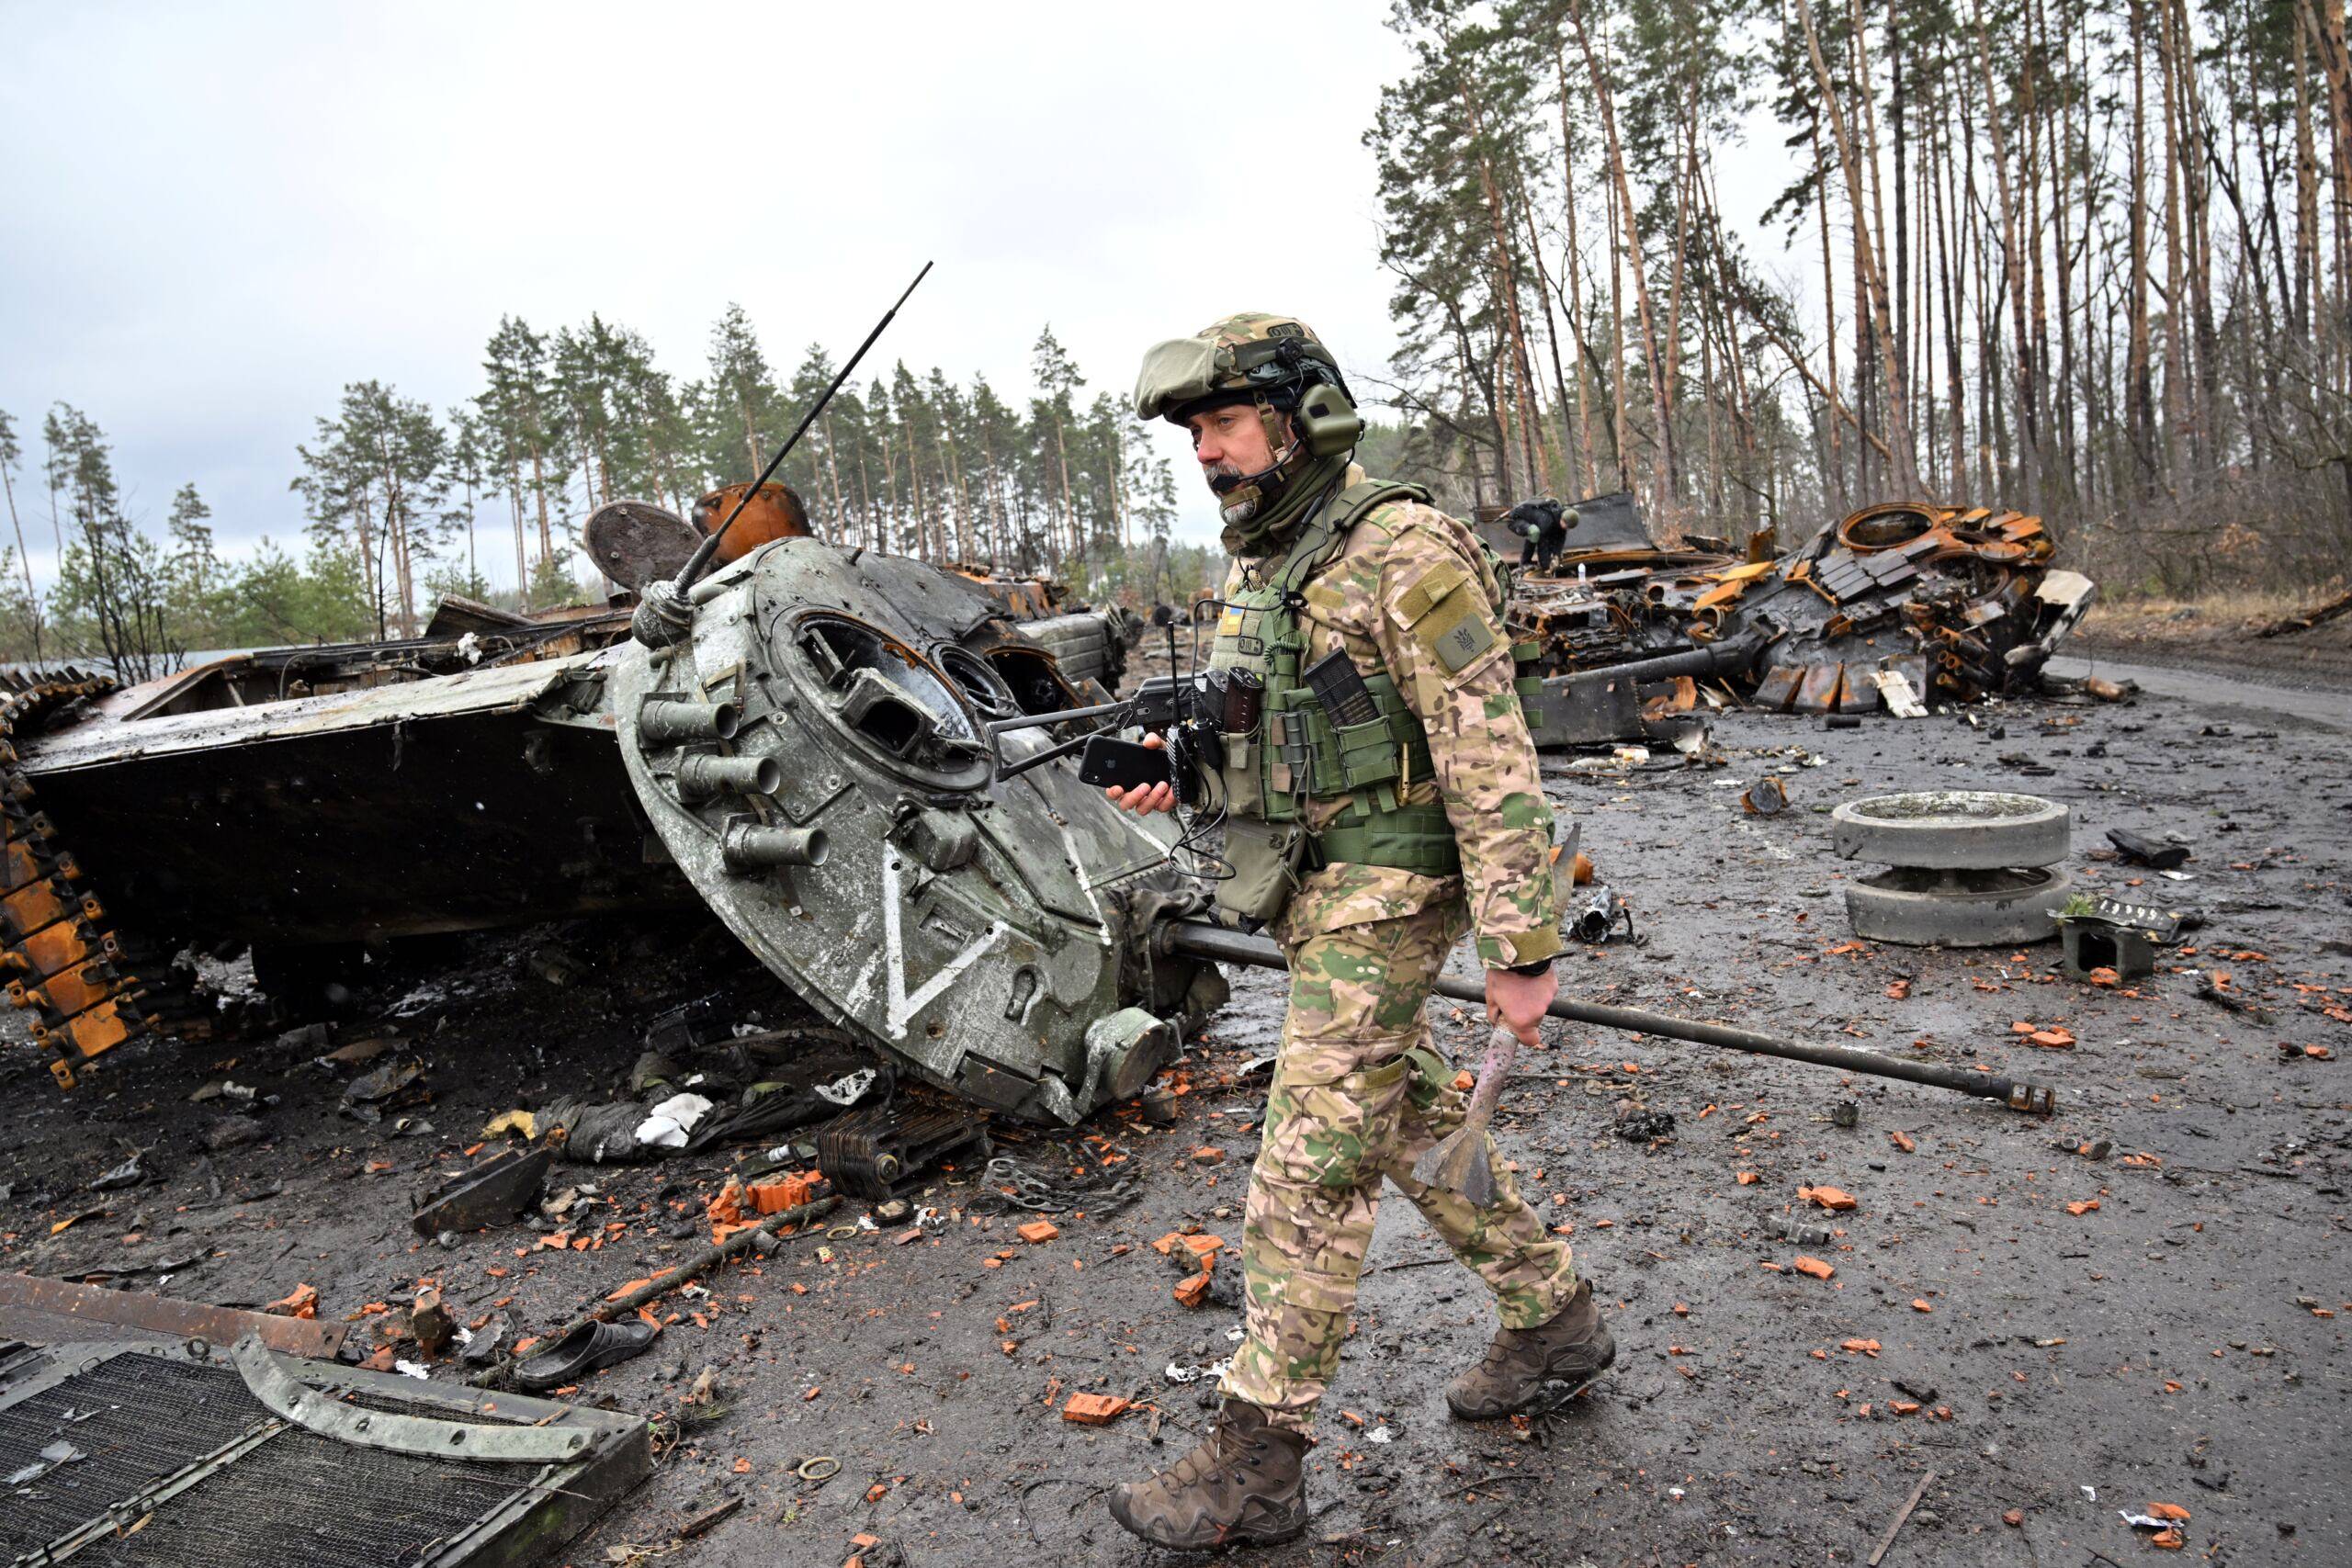 Żołnierz idzie obok zniszczonego czołgu